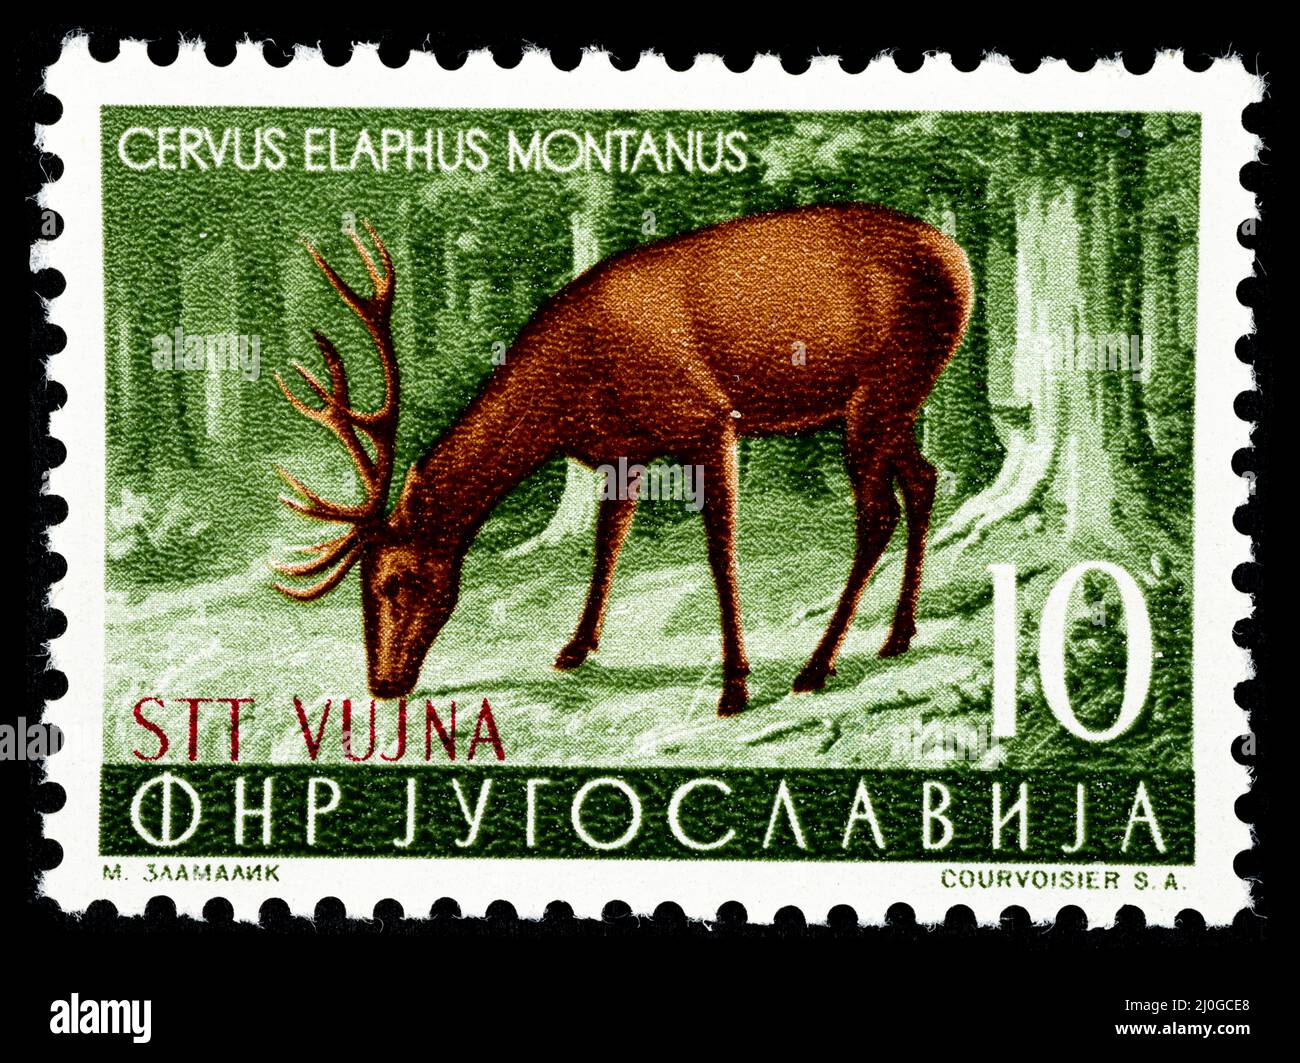 commemorative-postage-stamp-with-the-illustration-of-a-deer-cervus